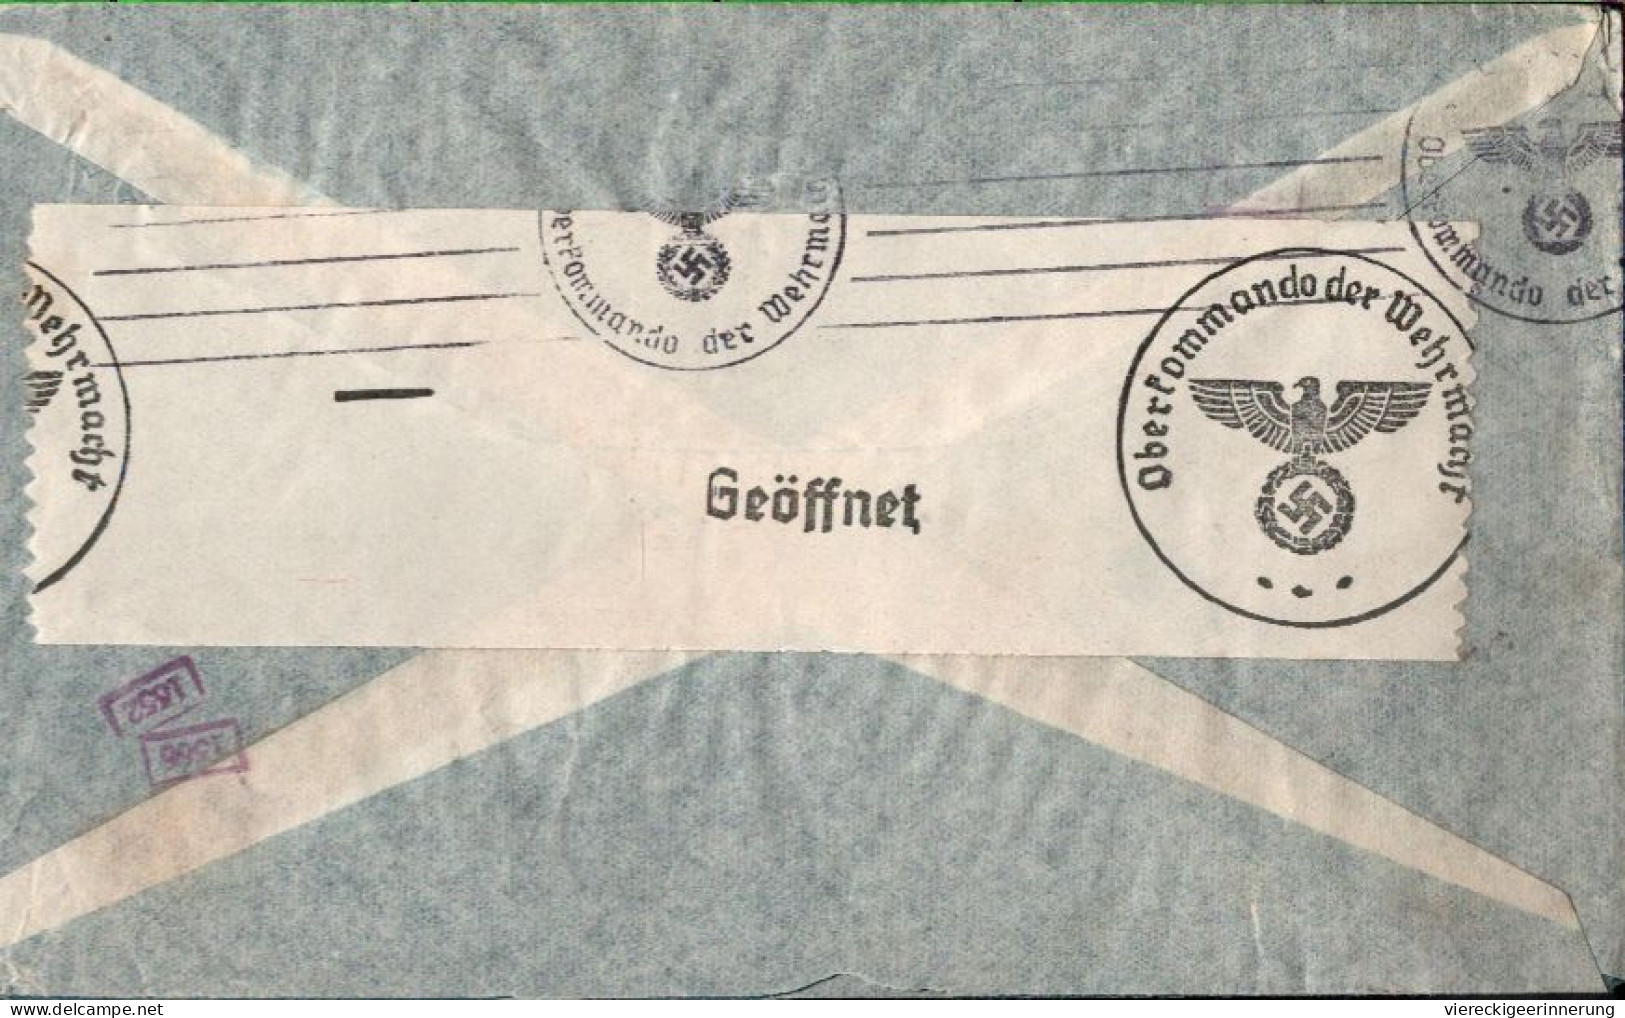 ! Argentinien 1940 Luftpost Brief Aus Buenos Aires Nach Berlin Mit OKW Zensur, Censor Mark, Airmail Via Condor - Briefe U. Dokumente